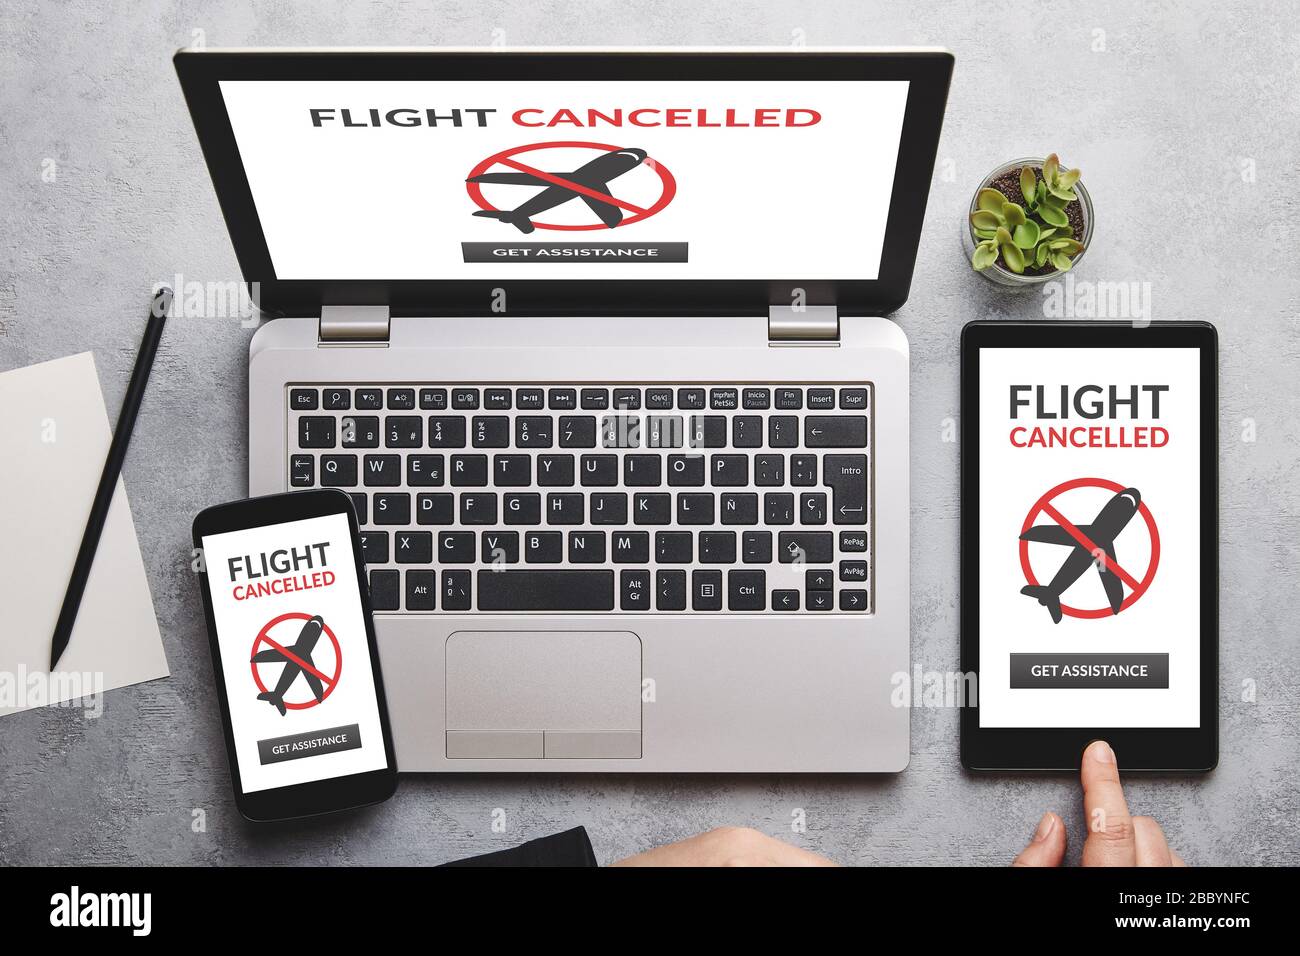 Concepto de vuelo cancelado en la pantalla del portátil, tablet y smartphone sobre una mesa gris. Disposición plana Foto de stock